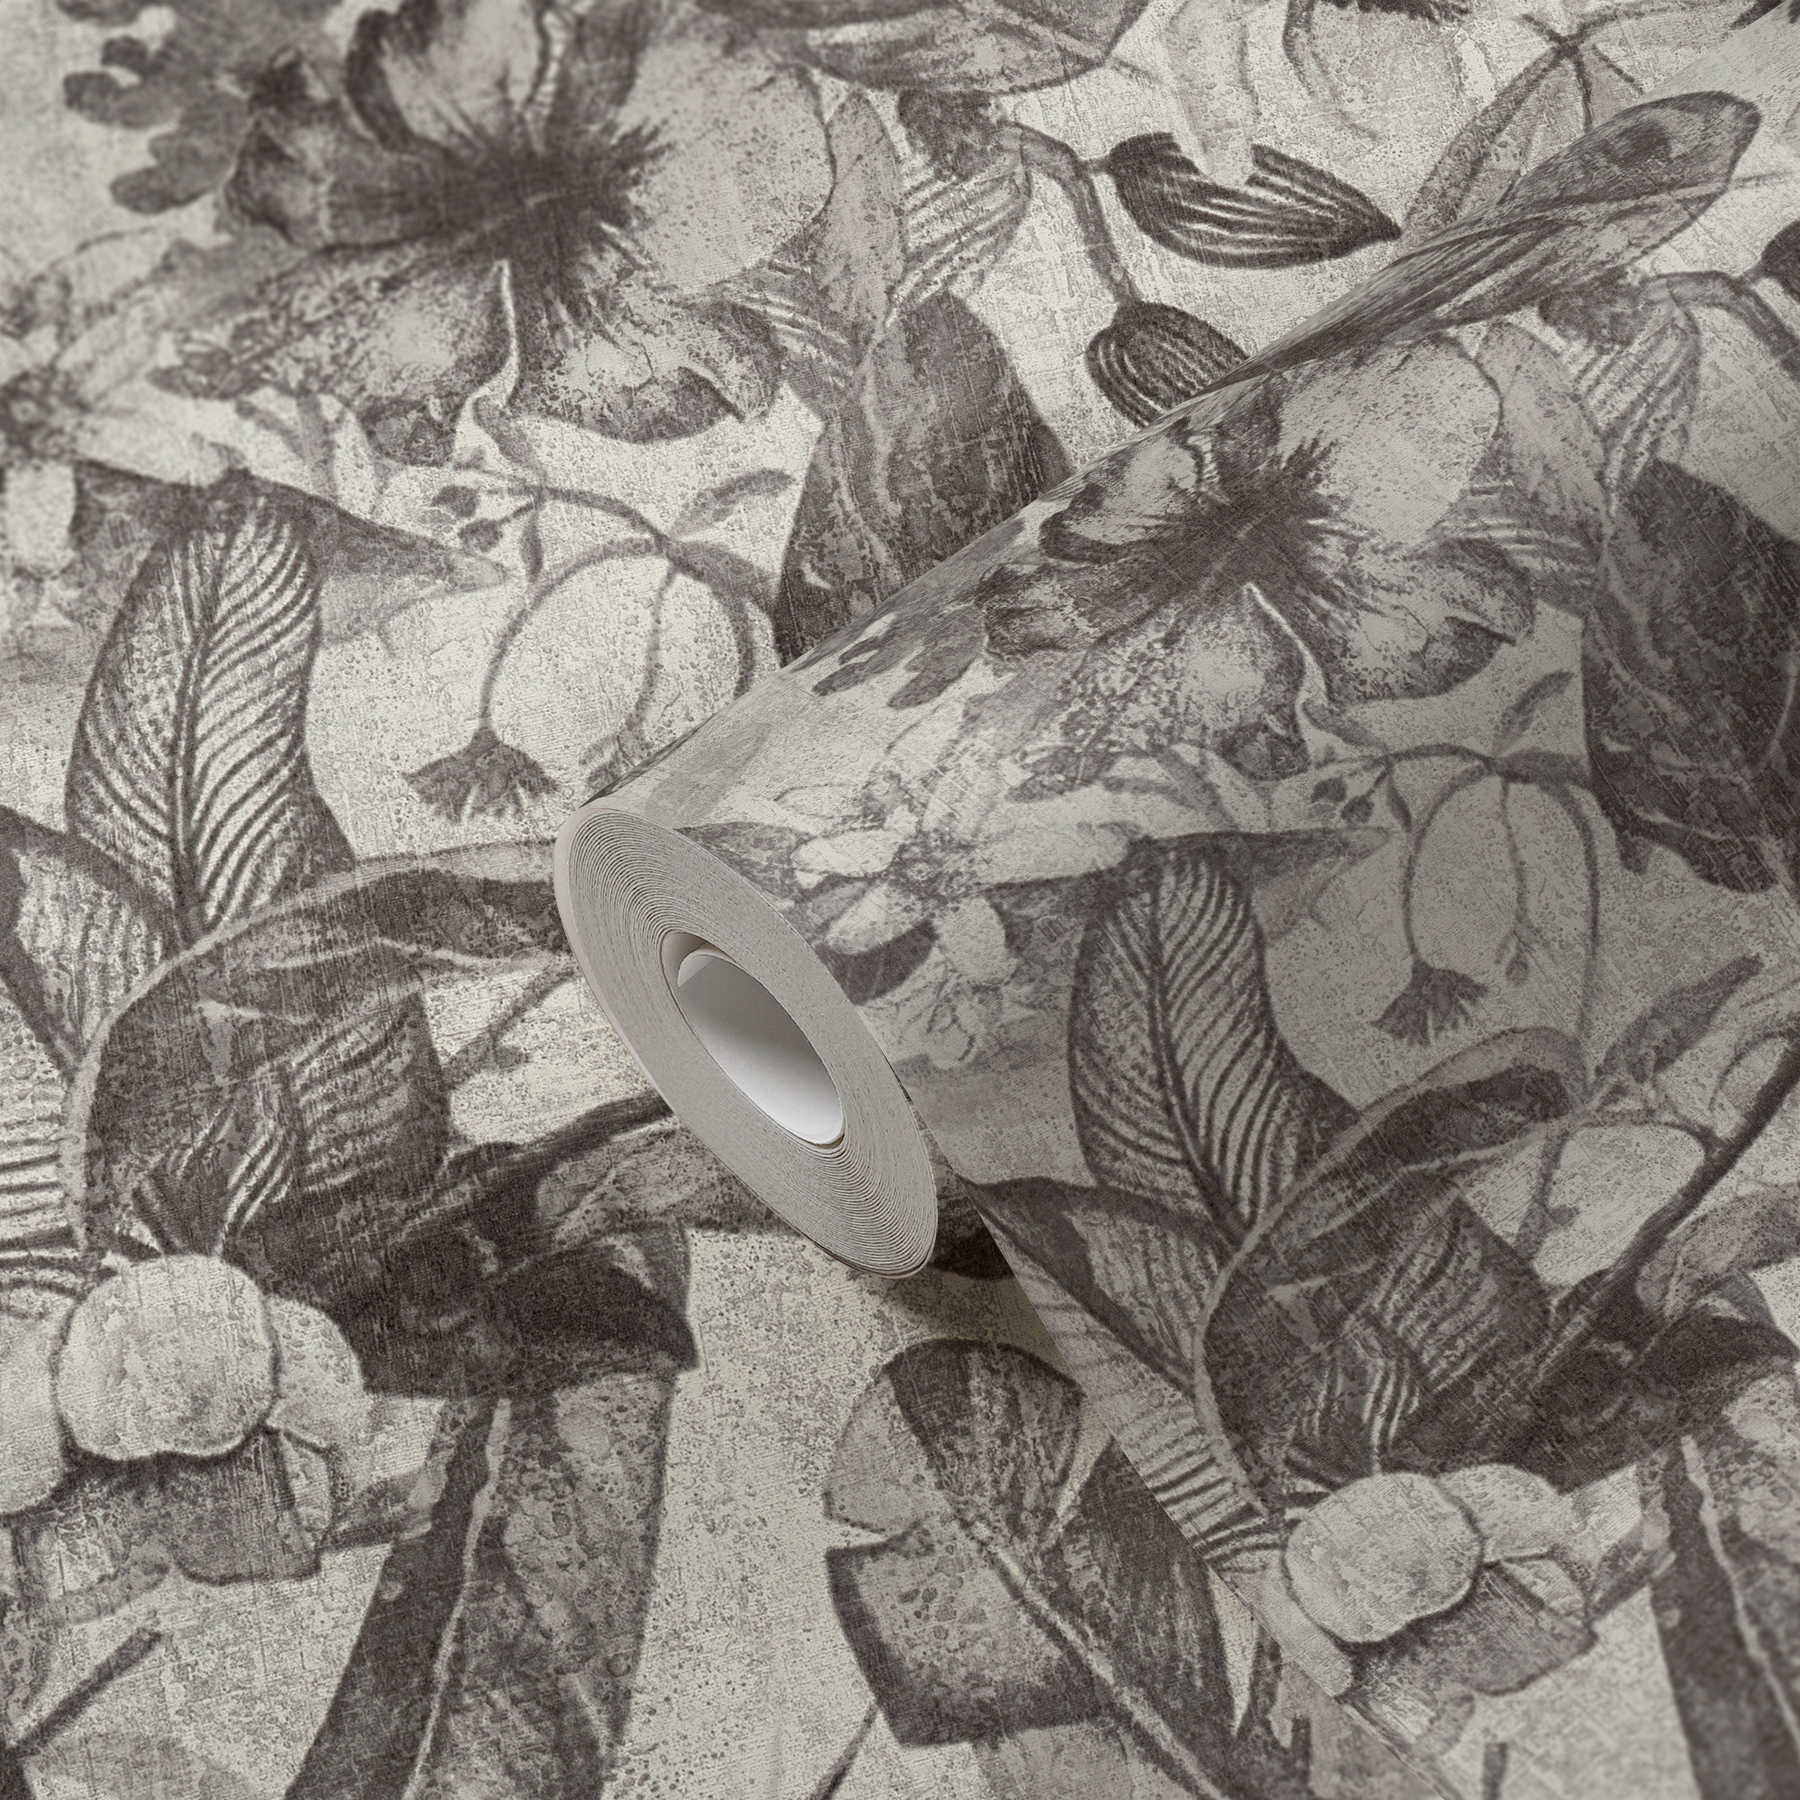             Tapete Blütenmuster, Tropen Stil & Textil-Optik – Grau, Schwarz, Weiß
        